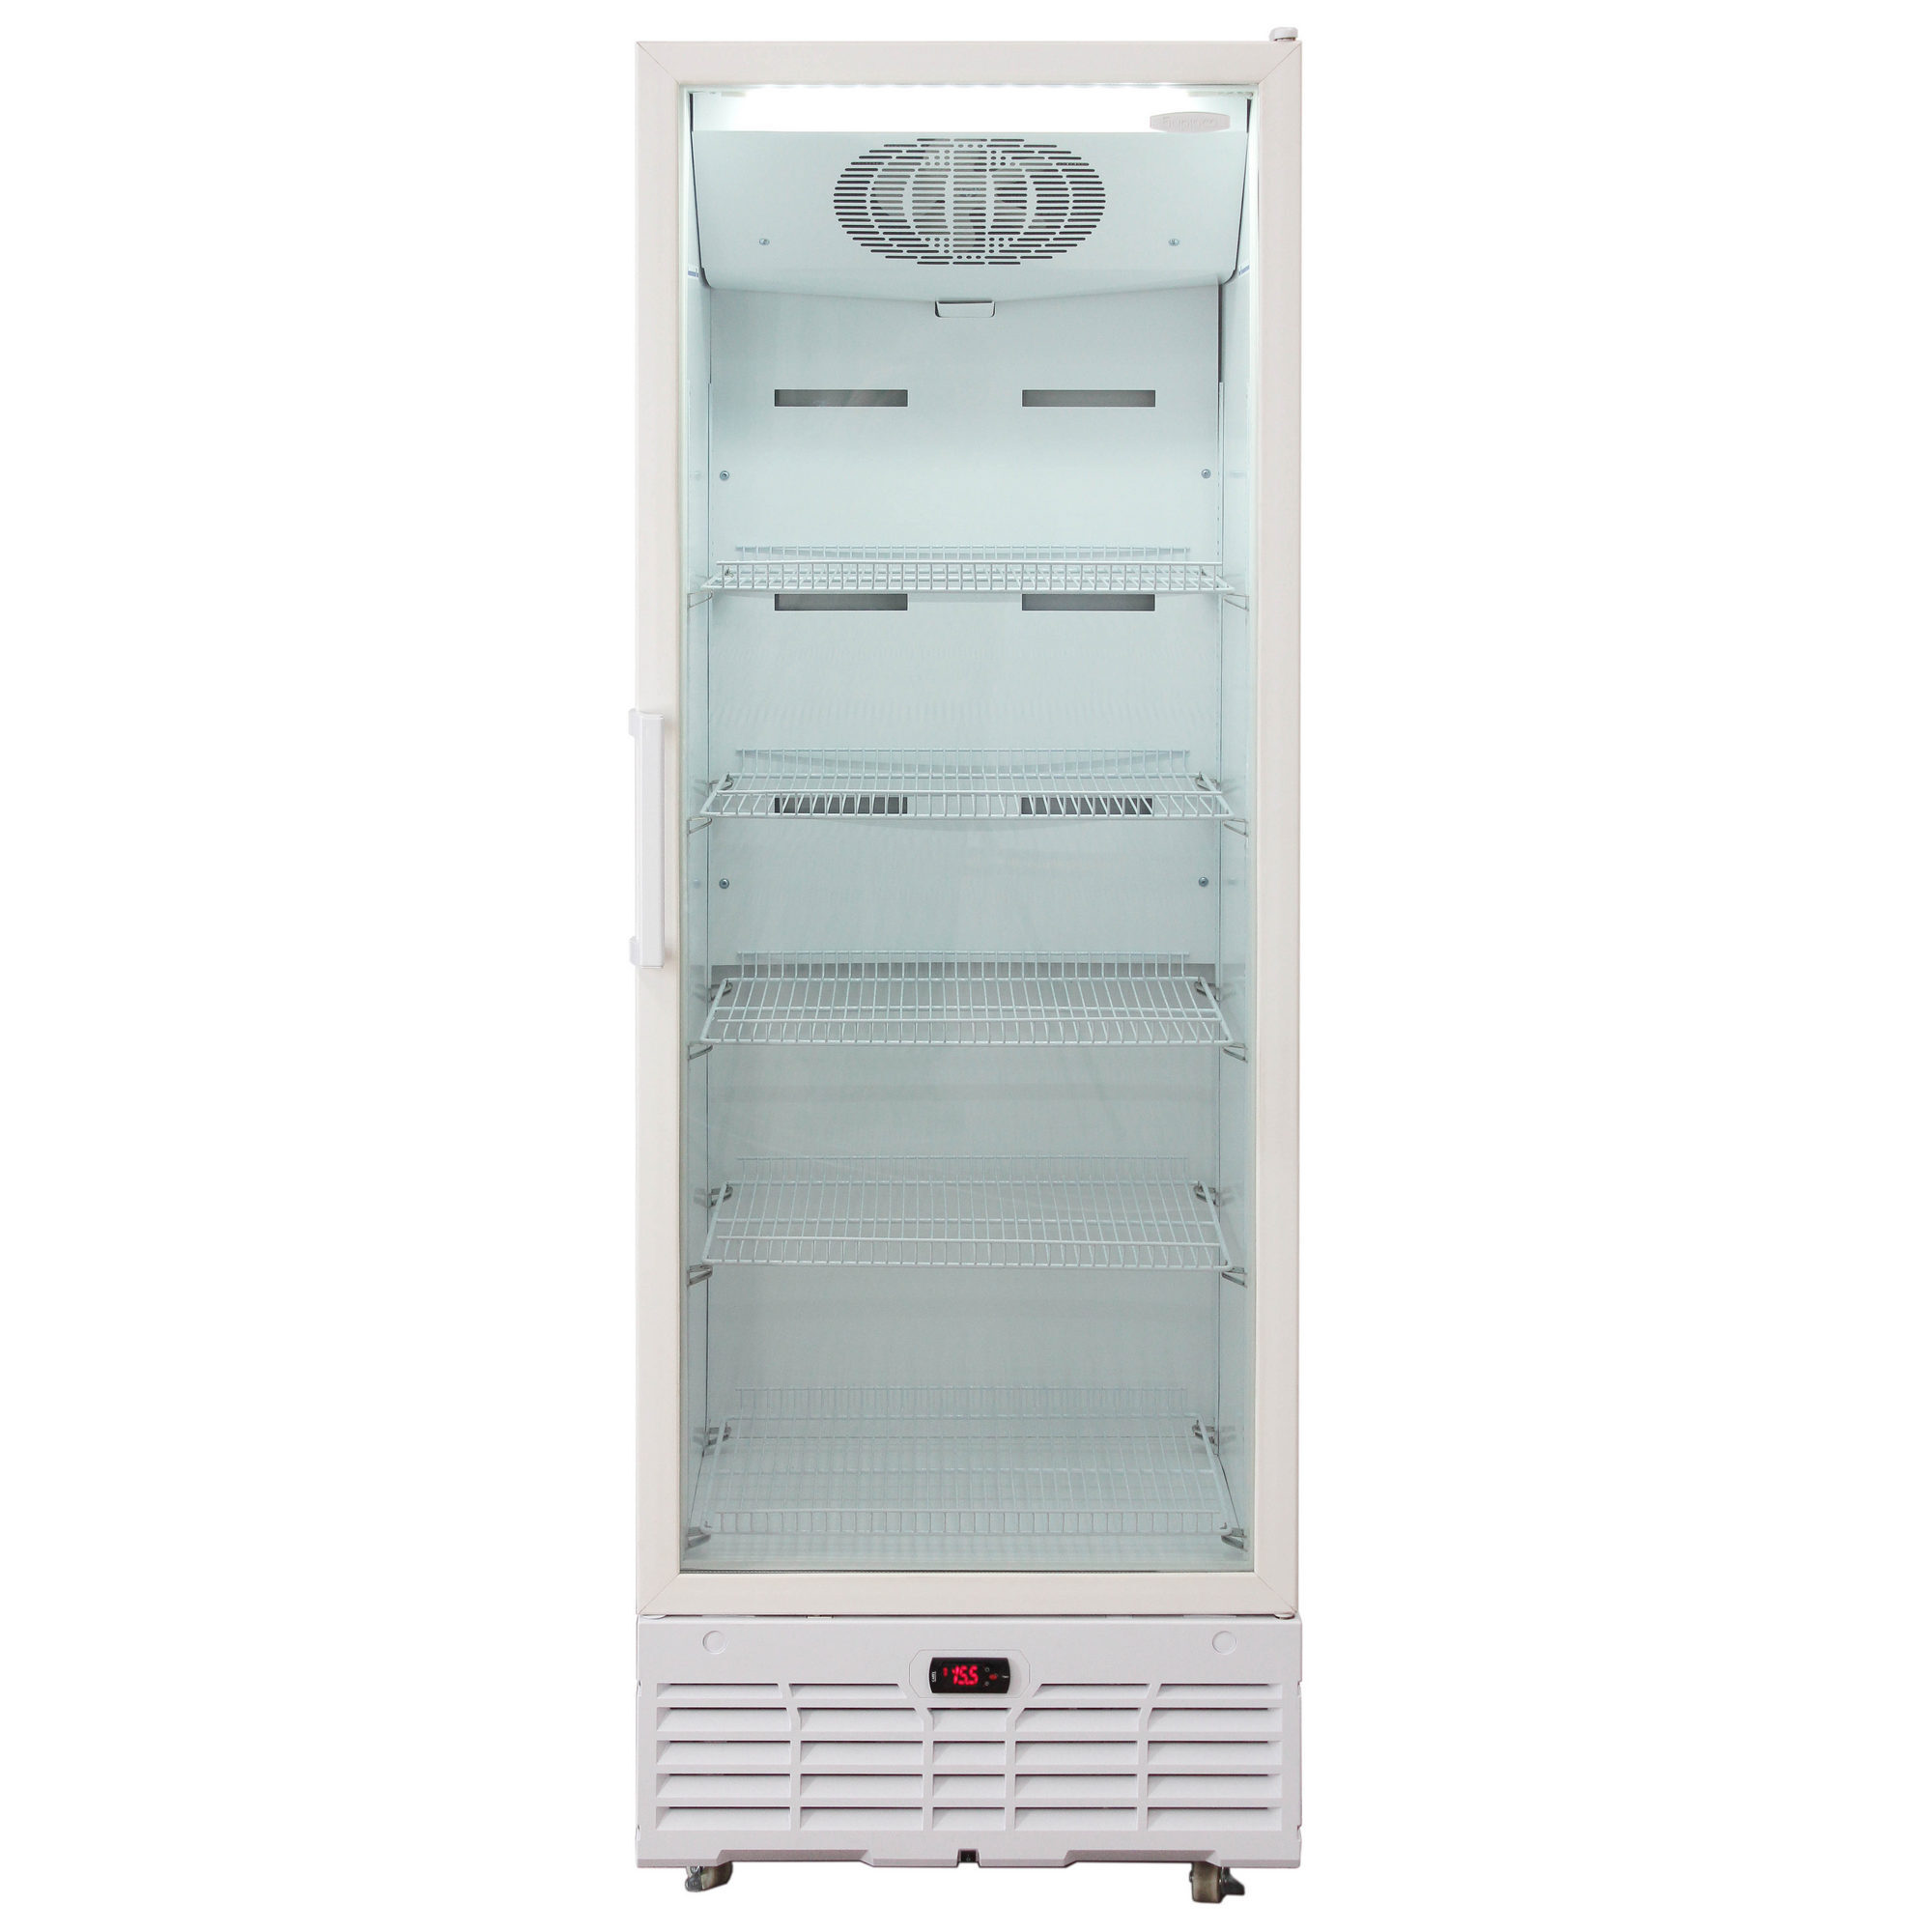 Холодильник витрина бирюса. Холодильник Бирюса 520n. Бирюса холодильник витрина 520. Шкаф-витрина Бирюса 520kdnq. Холодильный шкаф Бирюса 520n.